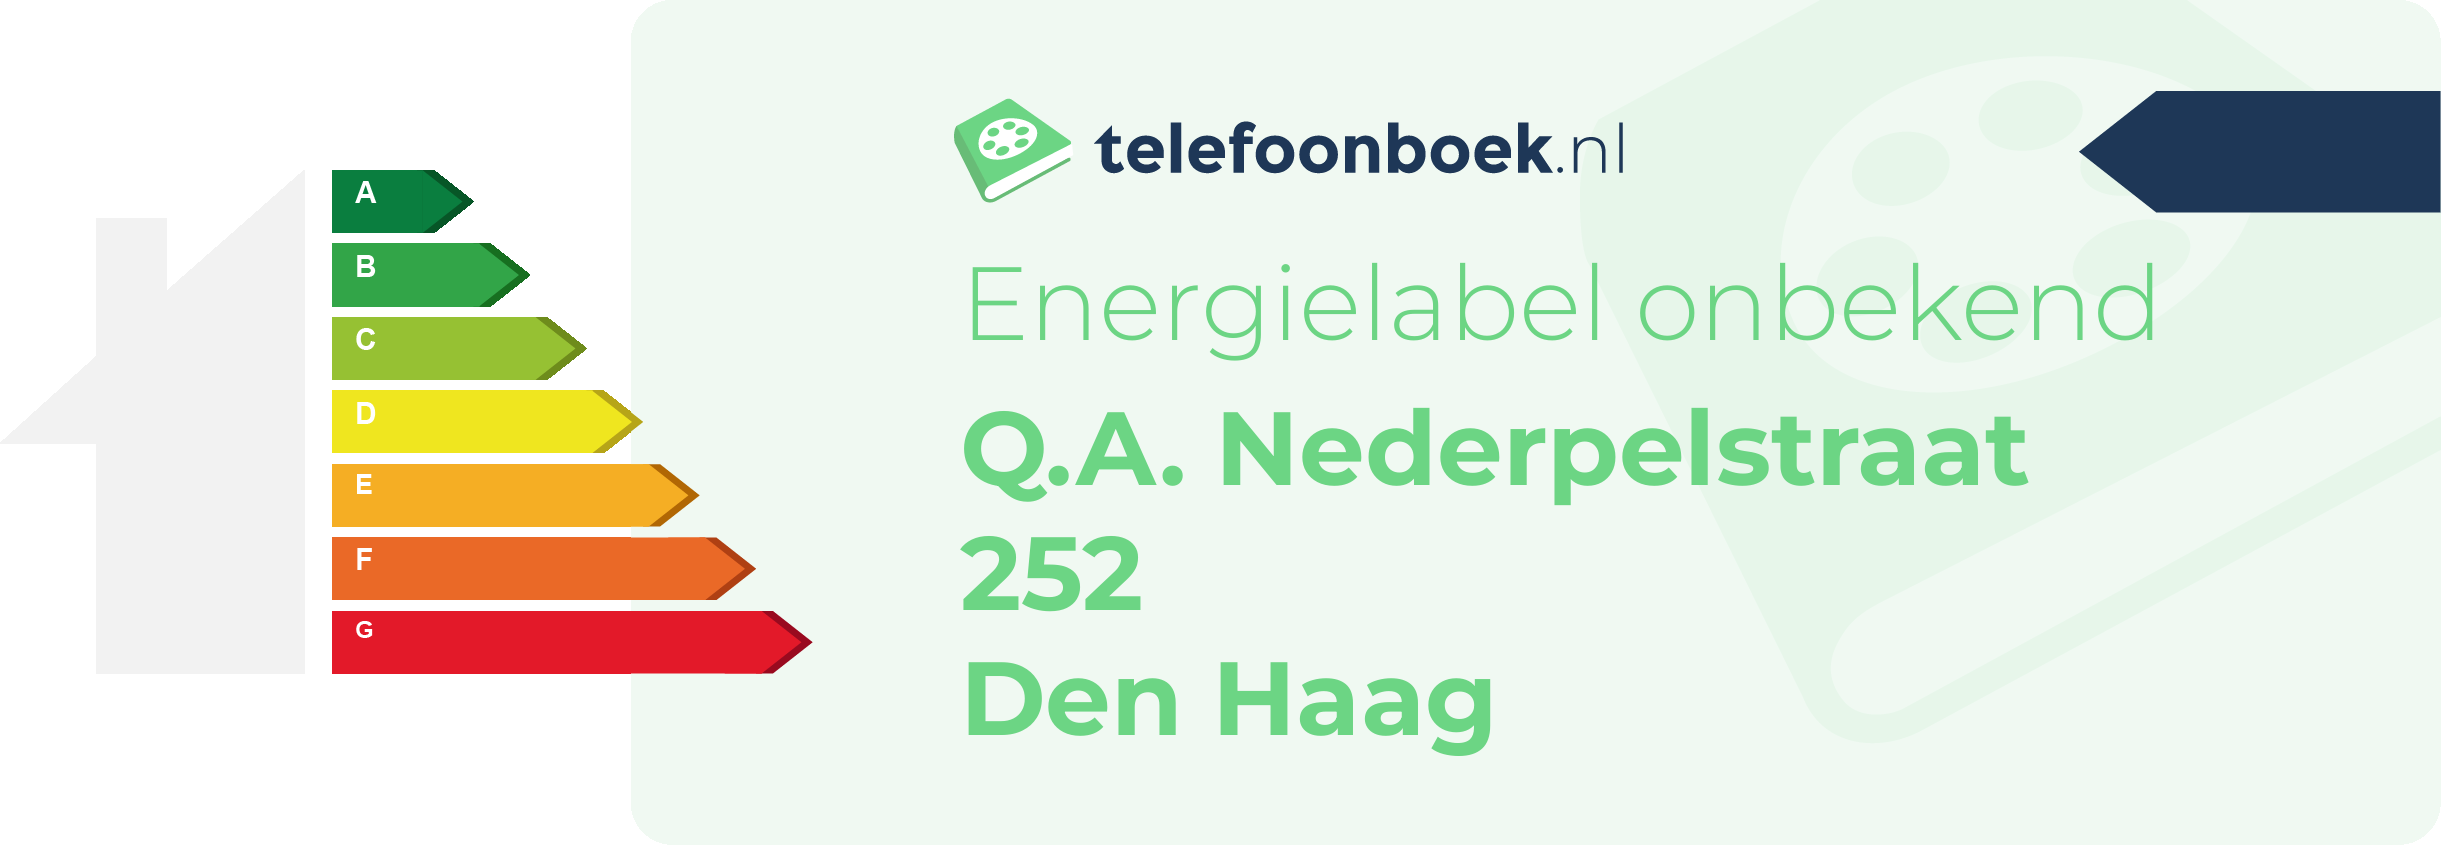 Energielabel Q.A. Nederpelstraat 252 Den Haag